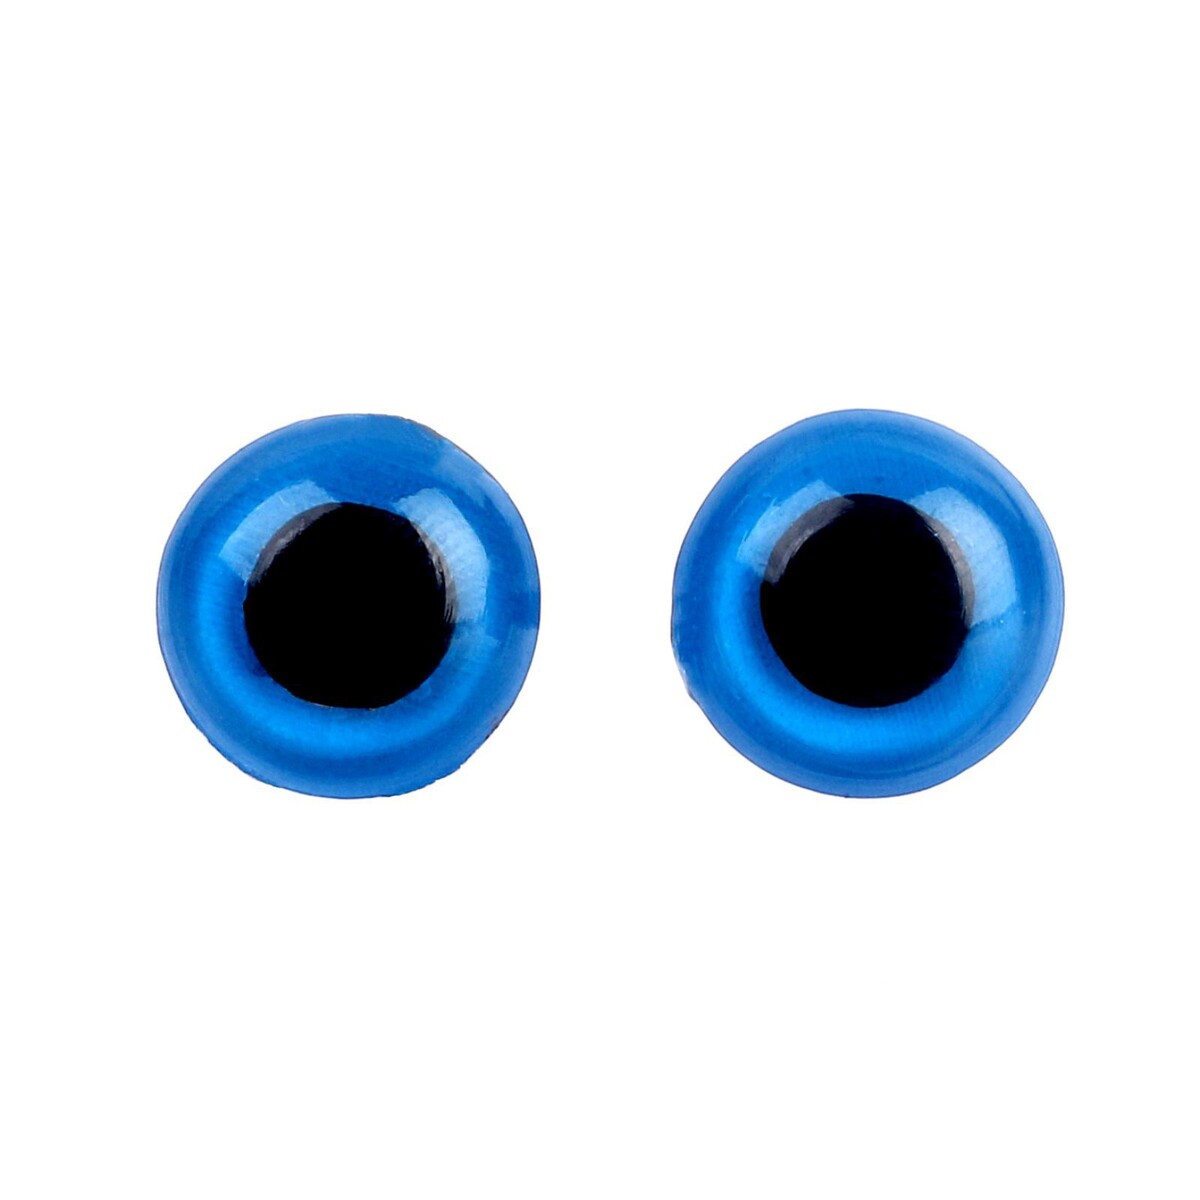 Глаза винтовые с заглушками, полупрозрачные, набор 4 шт, цвет голубой, размер 1 шт: 1×1 см глаза голубой собаки